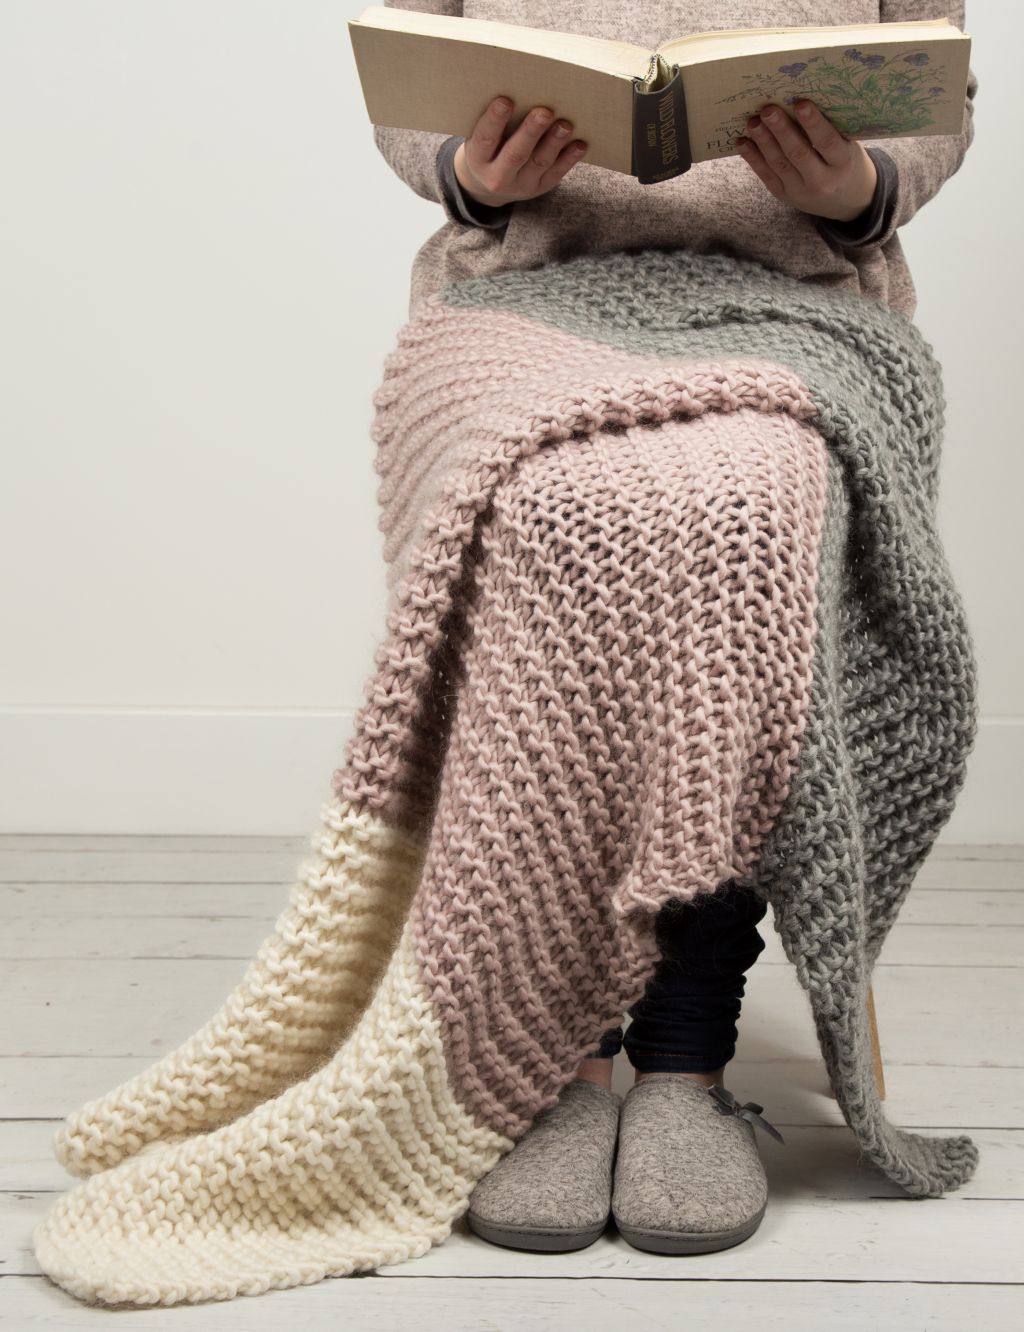 Hannah's Blanket Knitting Kit 3 of 3